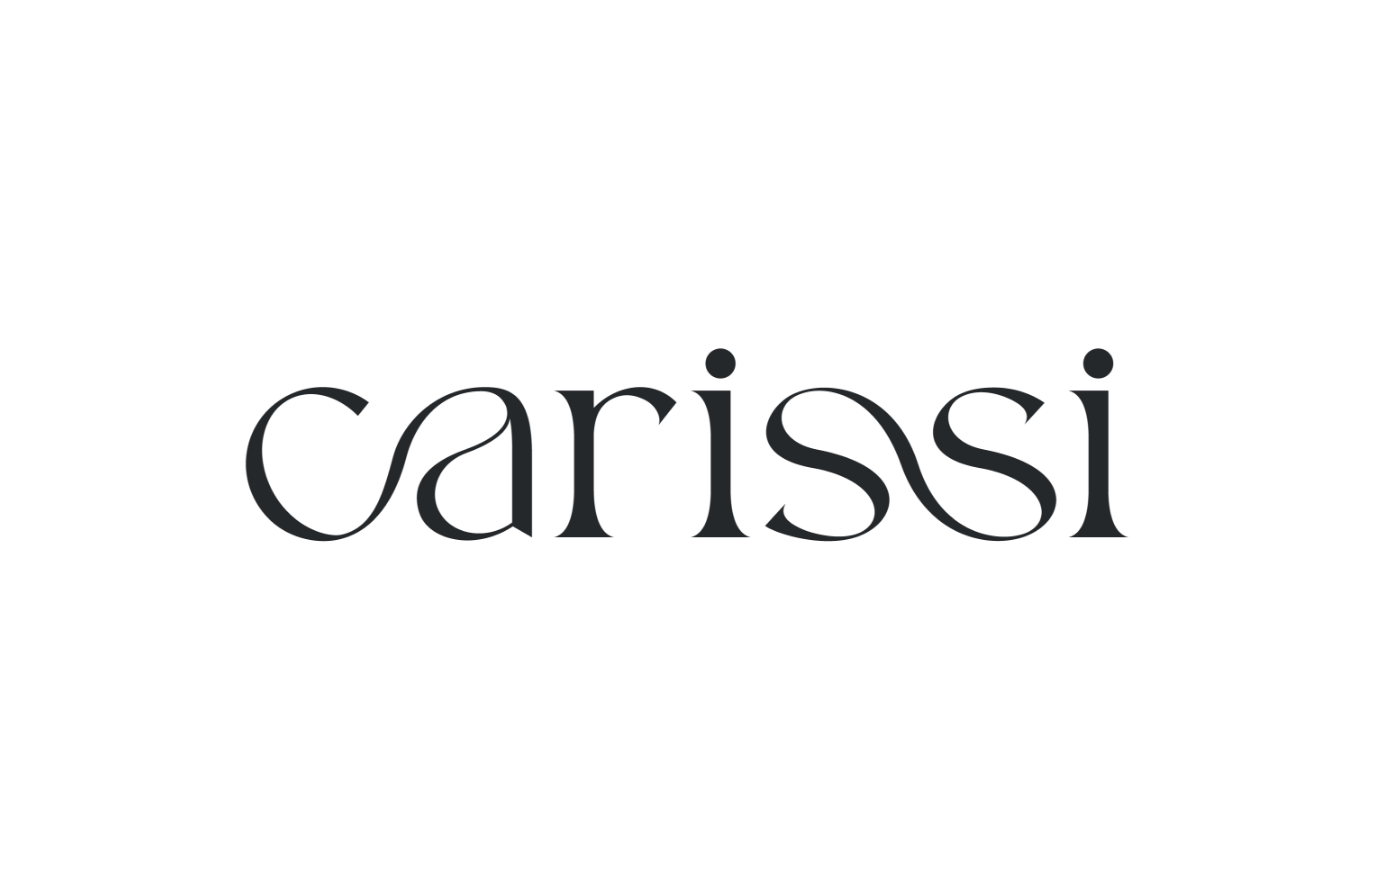 cg-carissi-logo.png